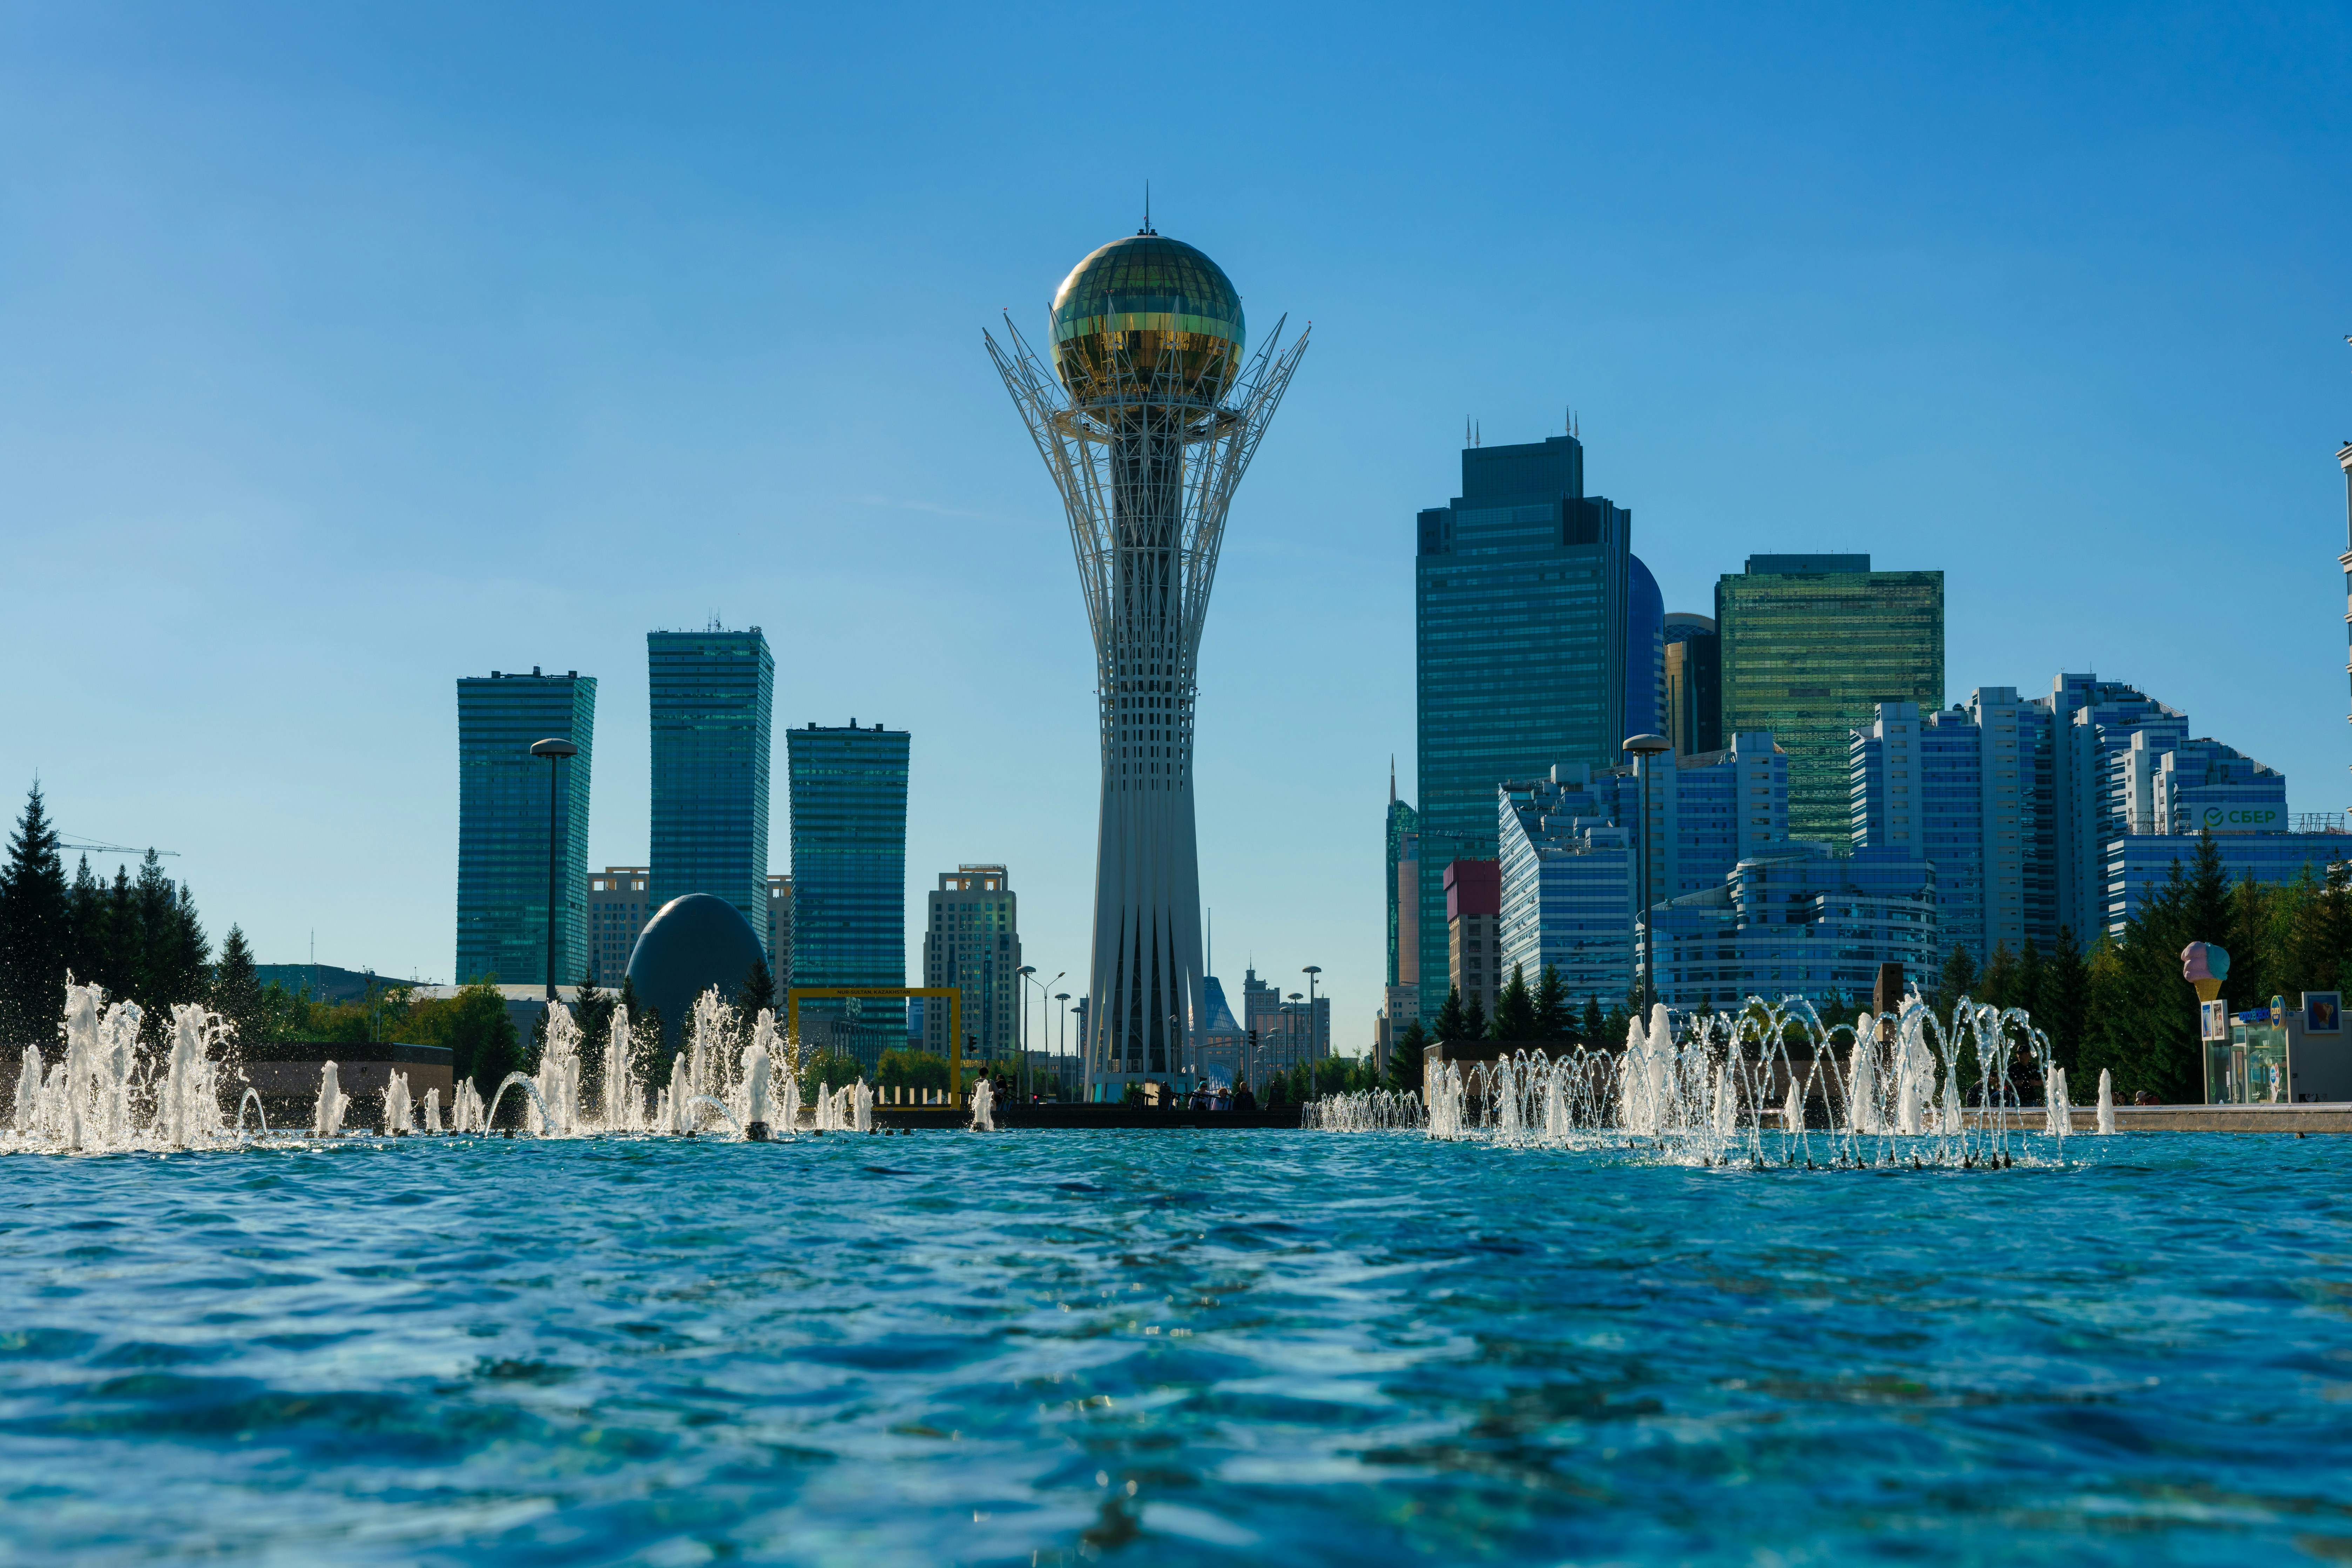 Les ciutats noves que neixen a l'Àsia Central: què s'hi amaga?